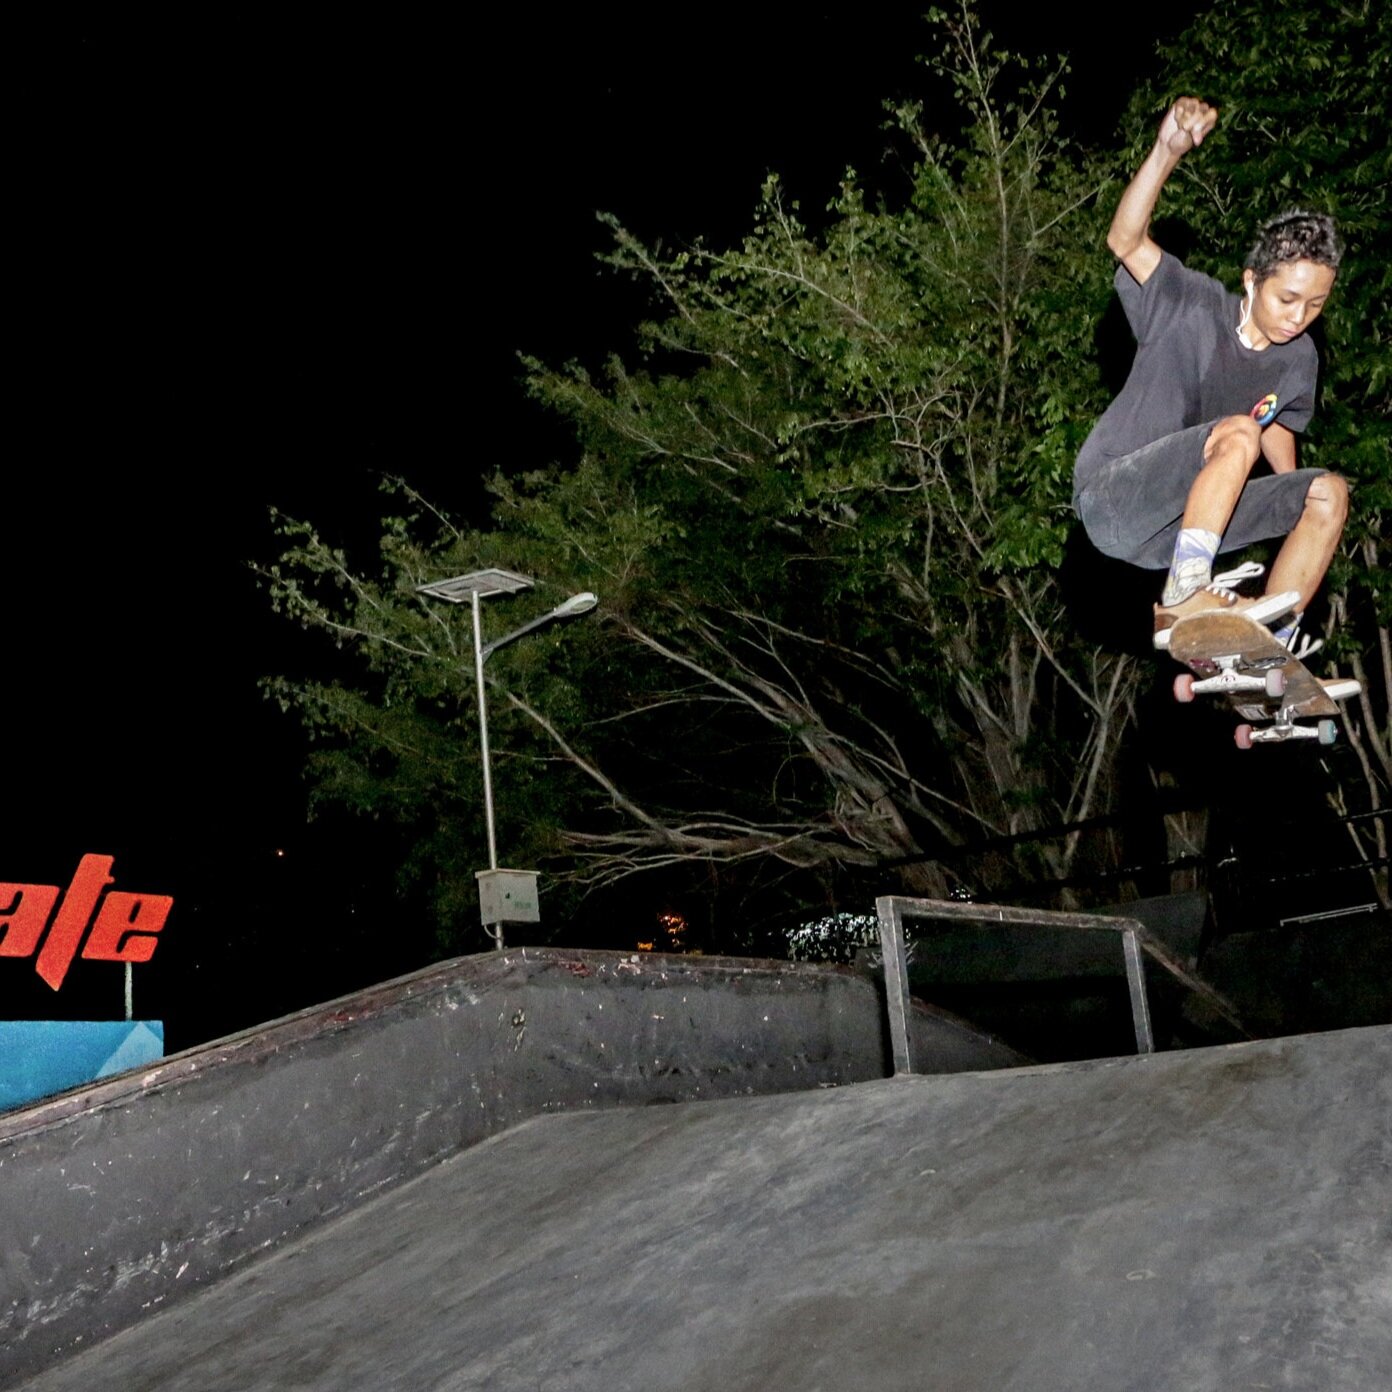 skatepark+night+action.jpg